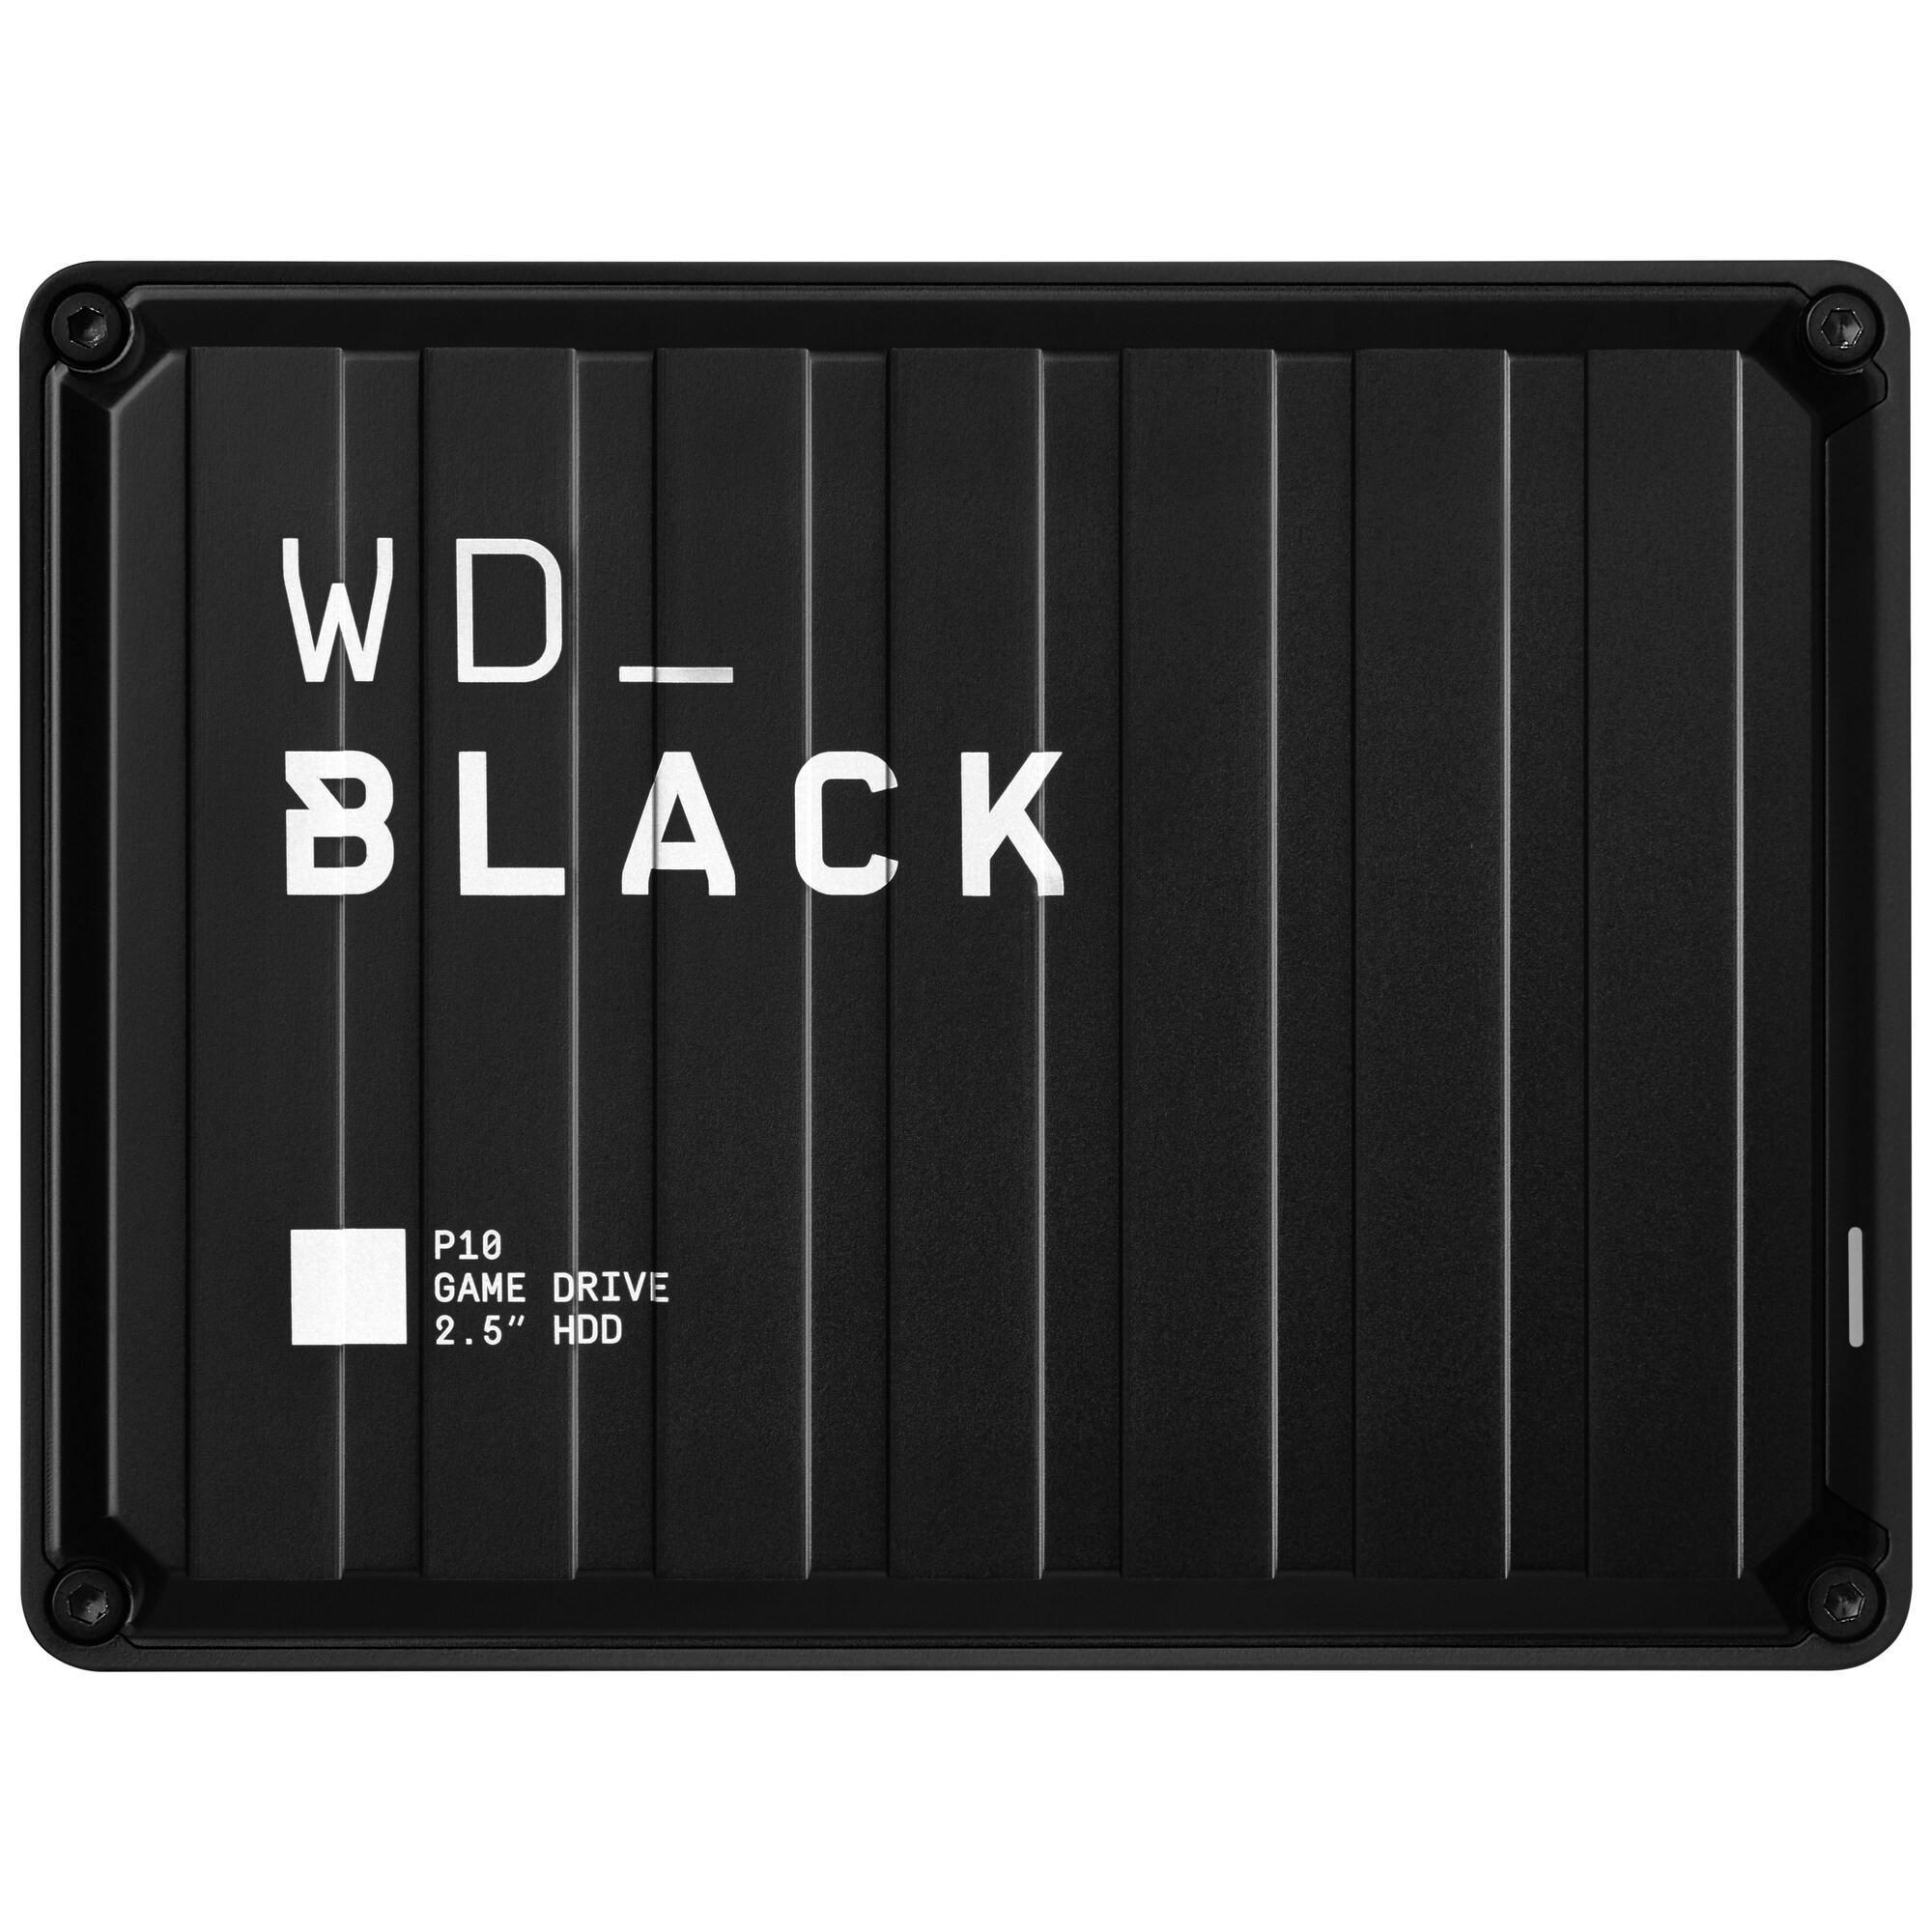 WD BLACK P10 Game Drive 5 TB harddisk - Elkjøp